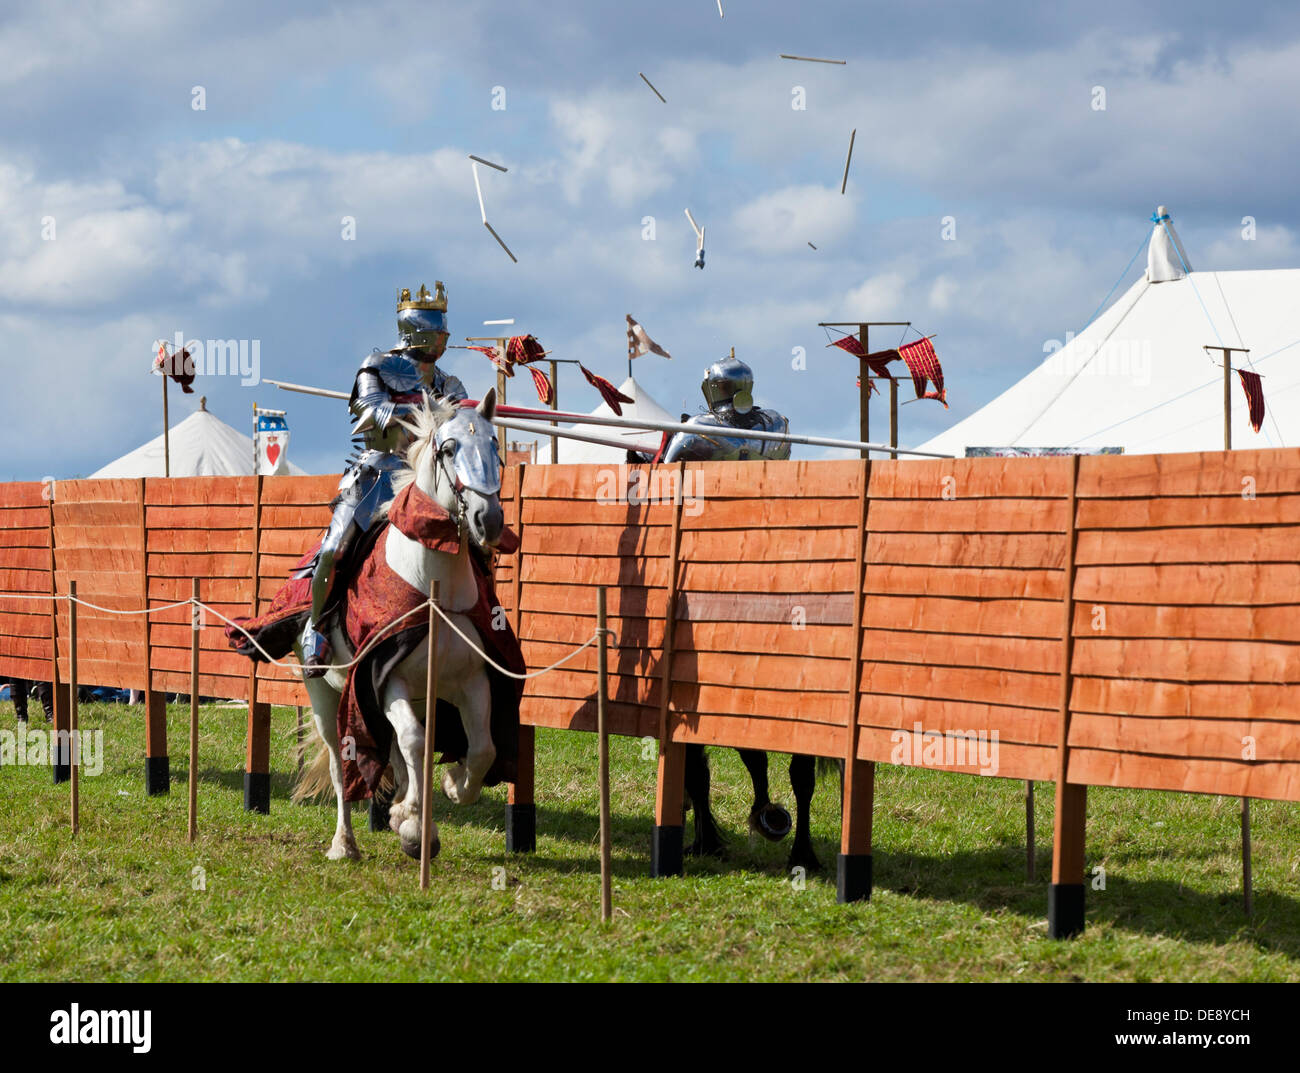 Zwei Ritter in mittelalterlichen Rüstungen kämpfen um Runde auf dem Pferderücken mit Lanzen England UK GB EU Europa Stockfoto